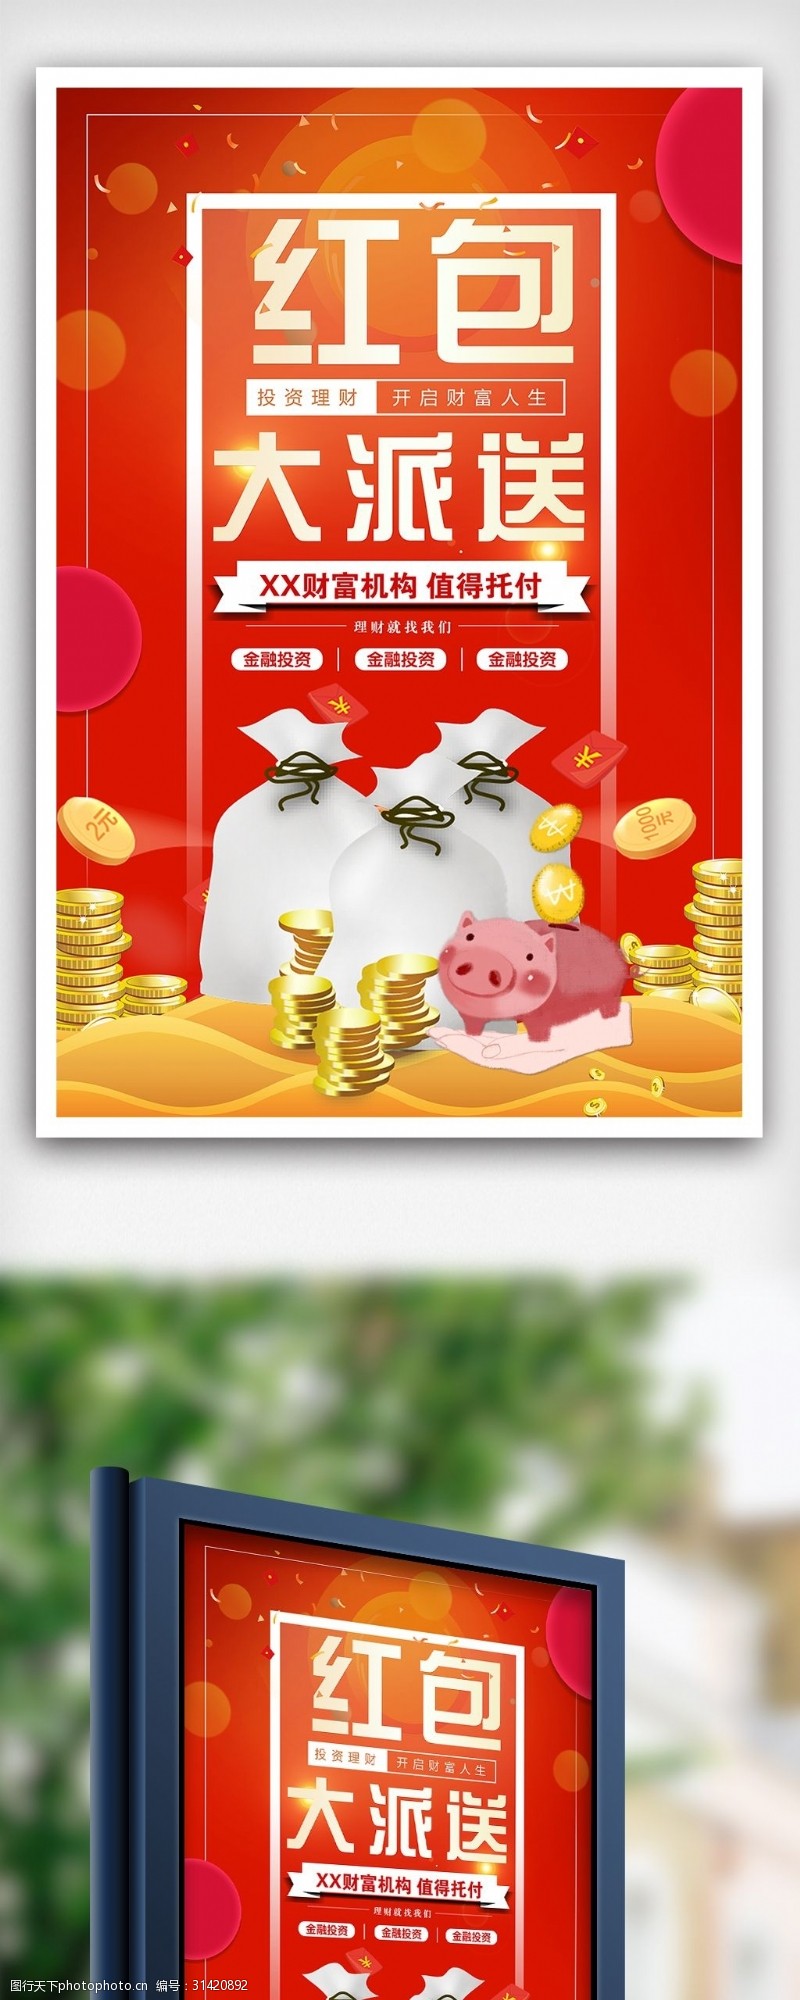 投资模板下载红色投资理财创意海报设计